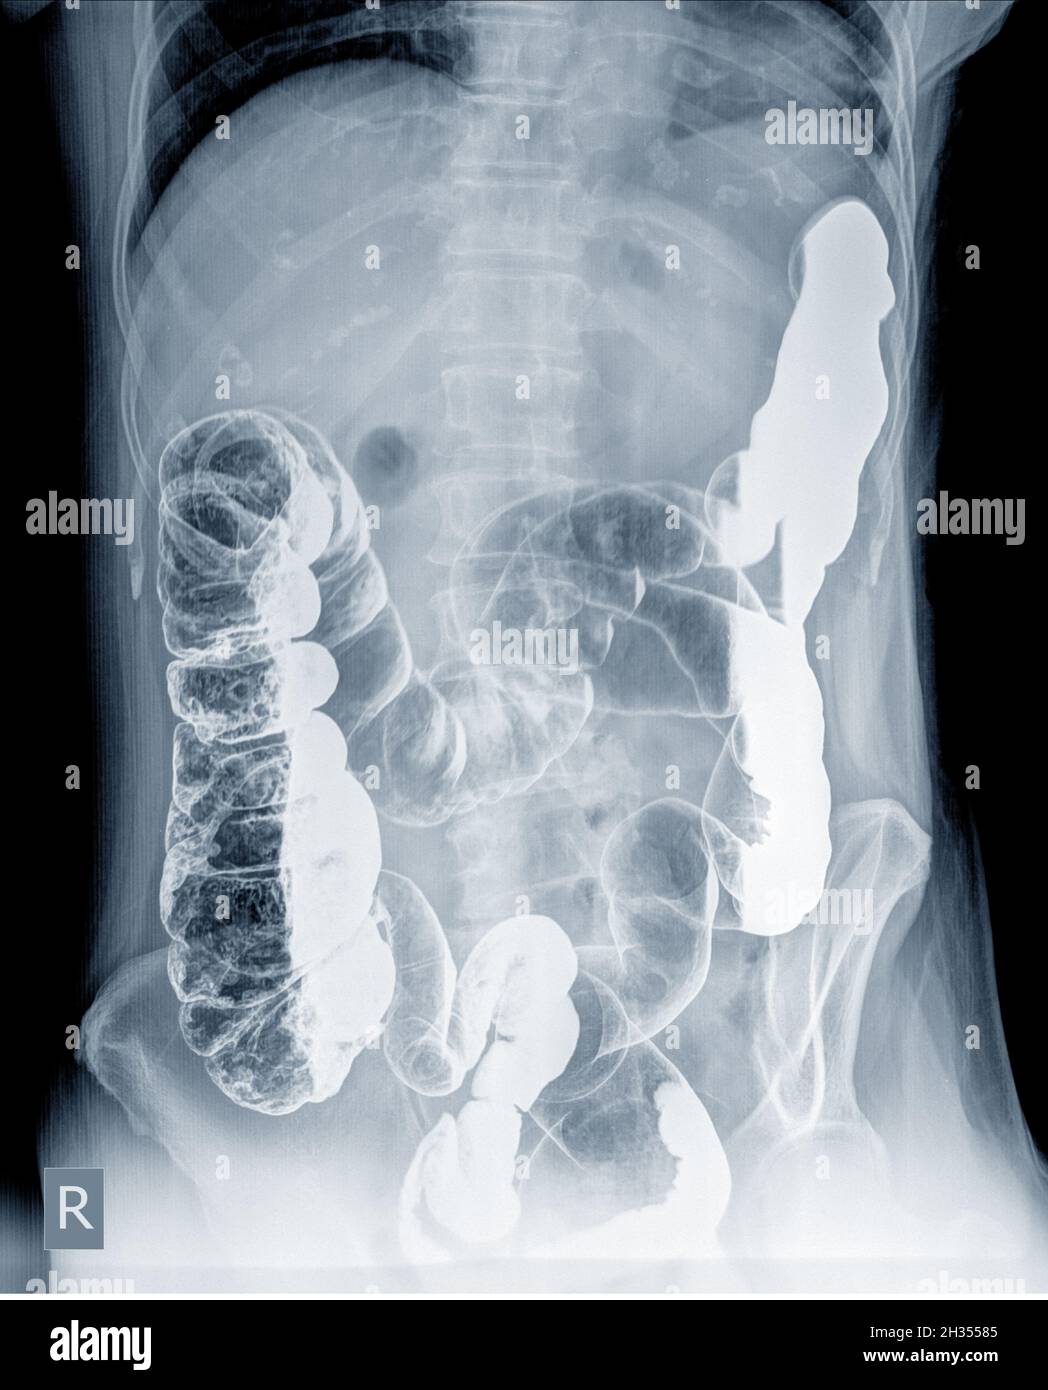 Esame radiologico per cercare le anomalie del colon da enema la polvere di bario e l'aria nell'ano. Quindi è stata eseguita la radiografia. Concetto di immagine medica. Foto Stock